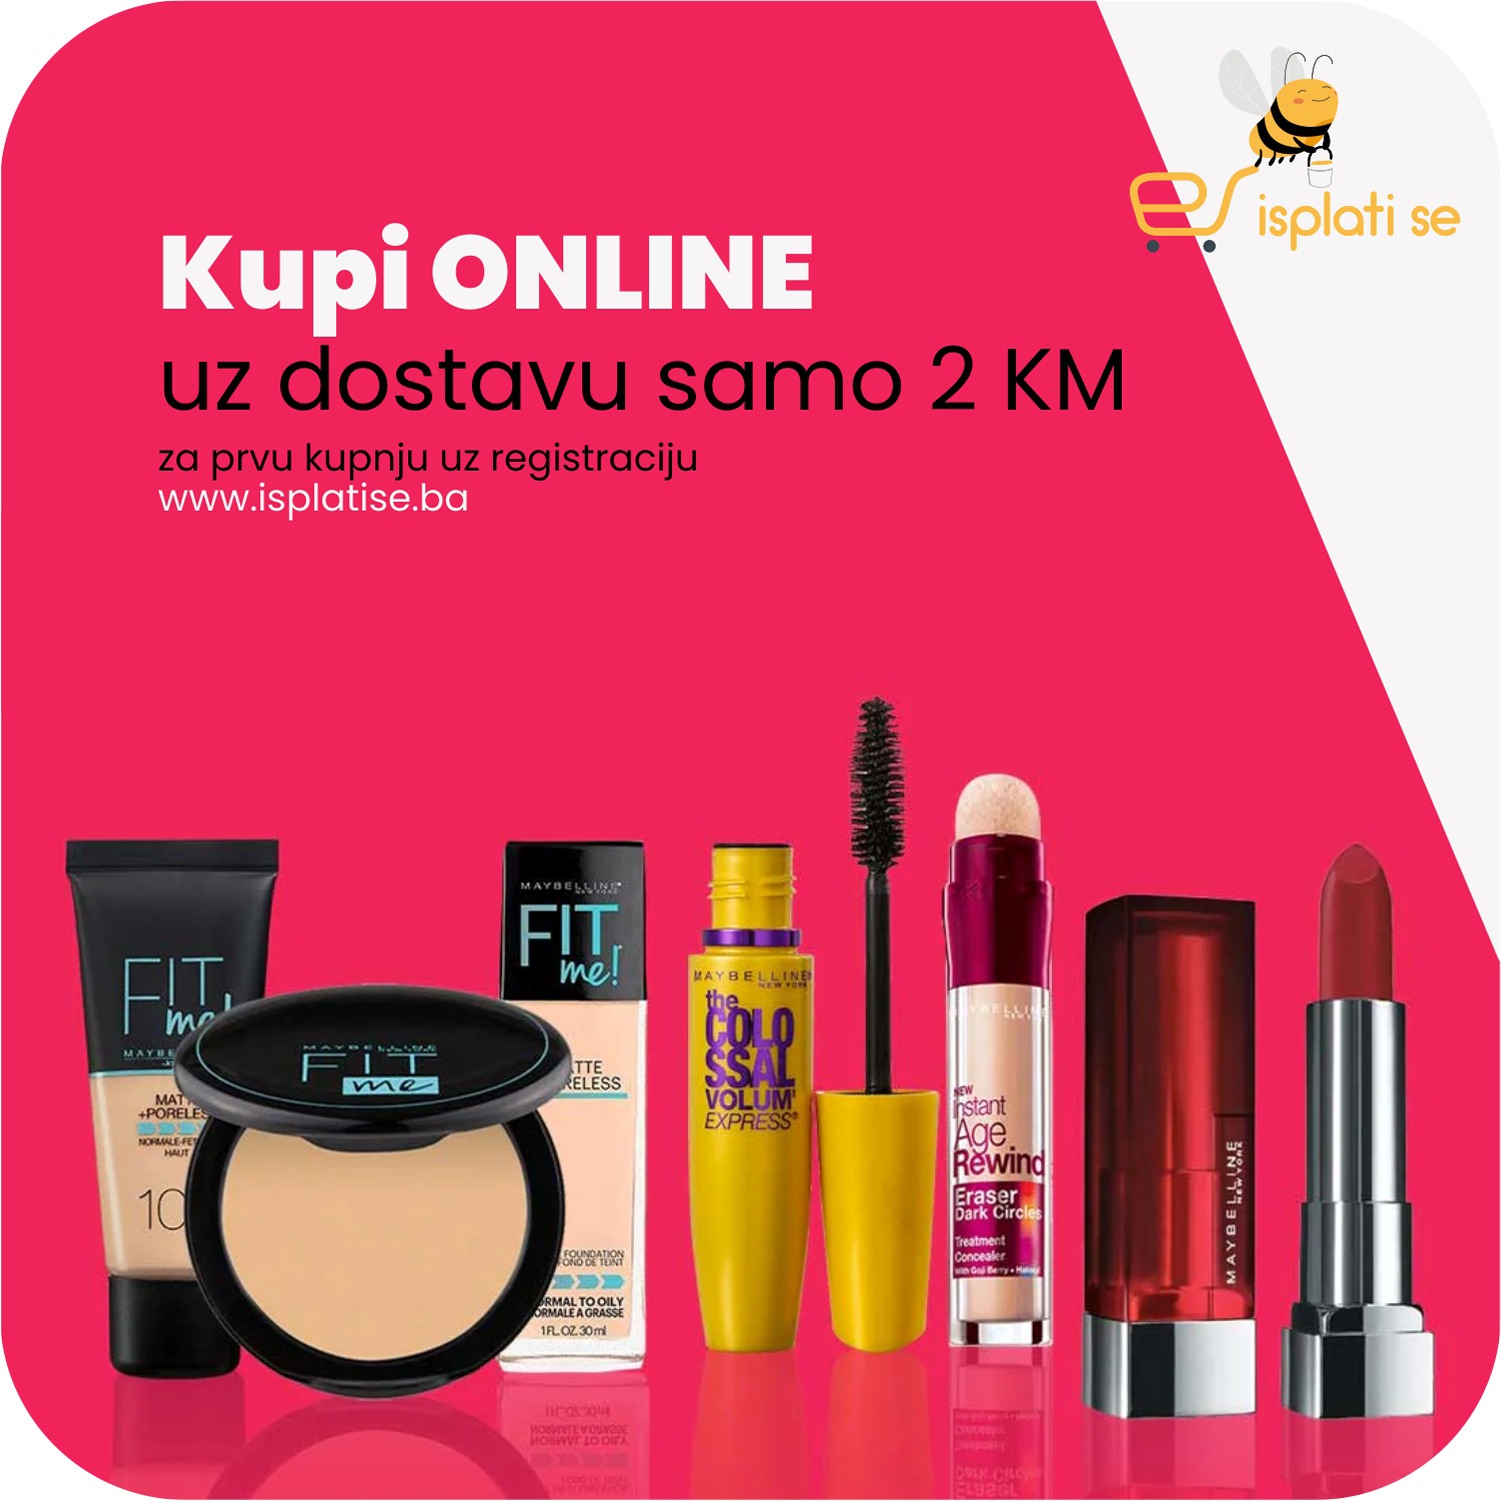 fit-me-maybelline-online-kupi-online-shop-isplatise-2